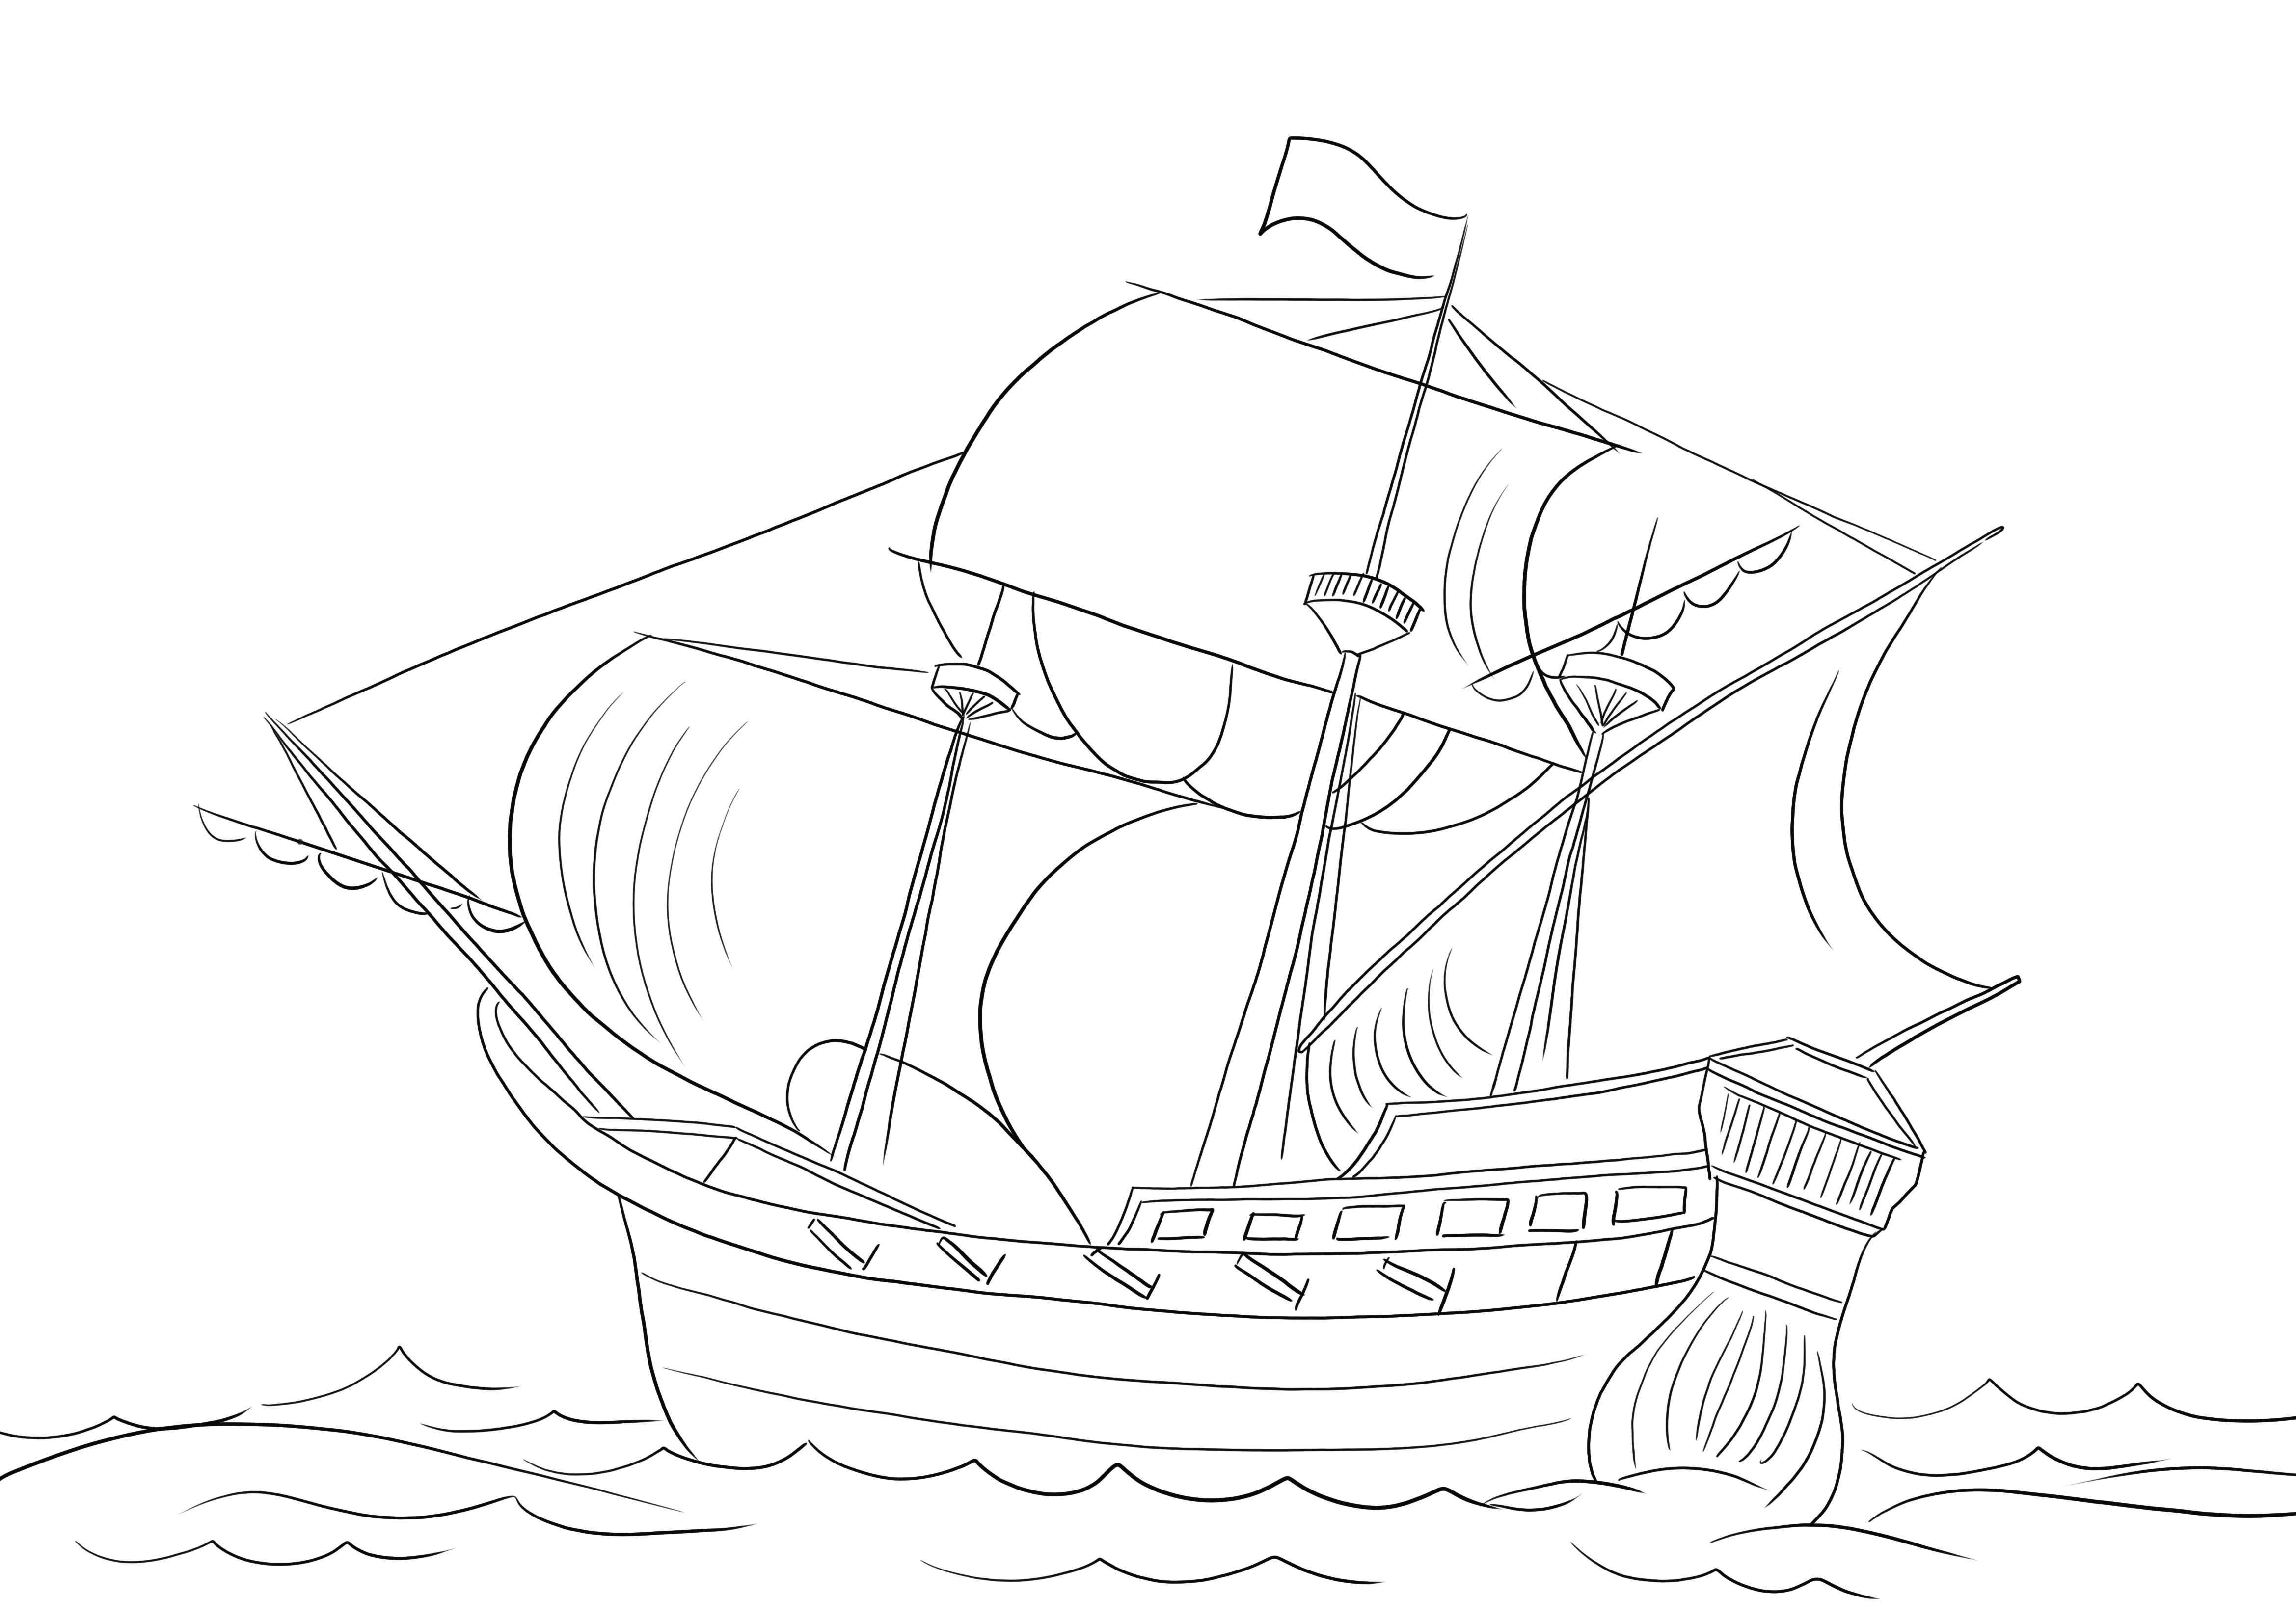 Imprimable gratuit d'un bateau pirate à colorier et à découvrir sur les types de navires